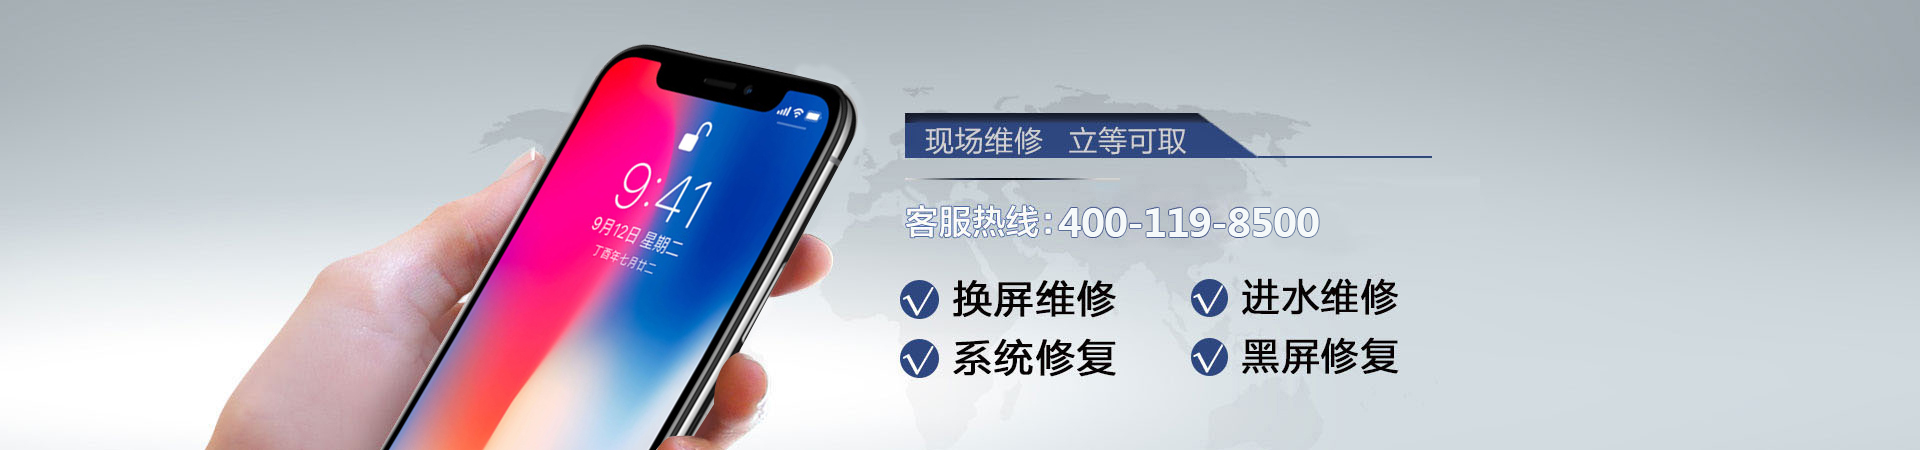 南京苹果手机维修服务地址查询